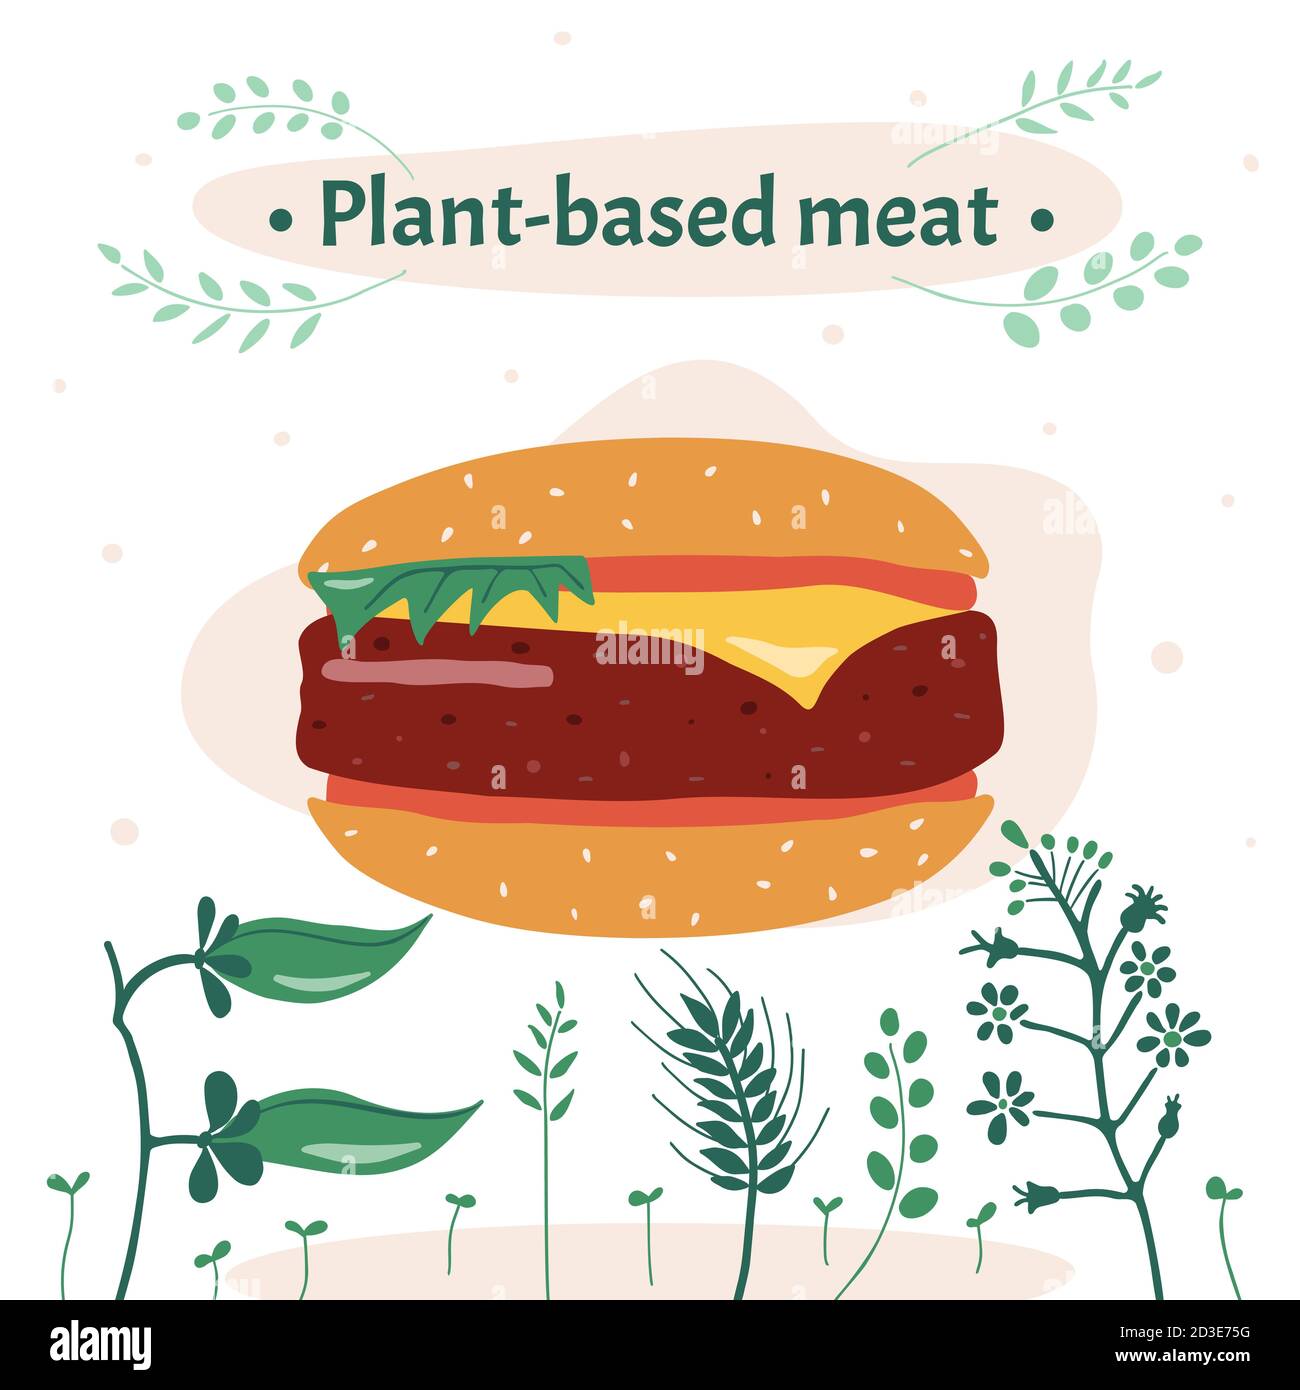 Vektorgrafik. Der Ersatz von tierischem Fleisch durch pflanzliche Mittel ist eine rationelle Nutzung der Bodenressourcen. Stock Vektor